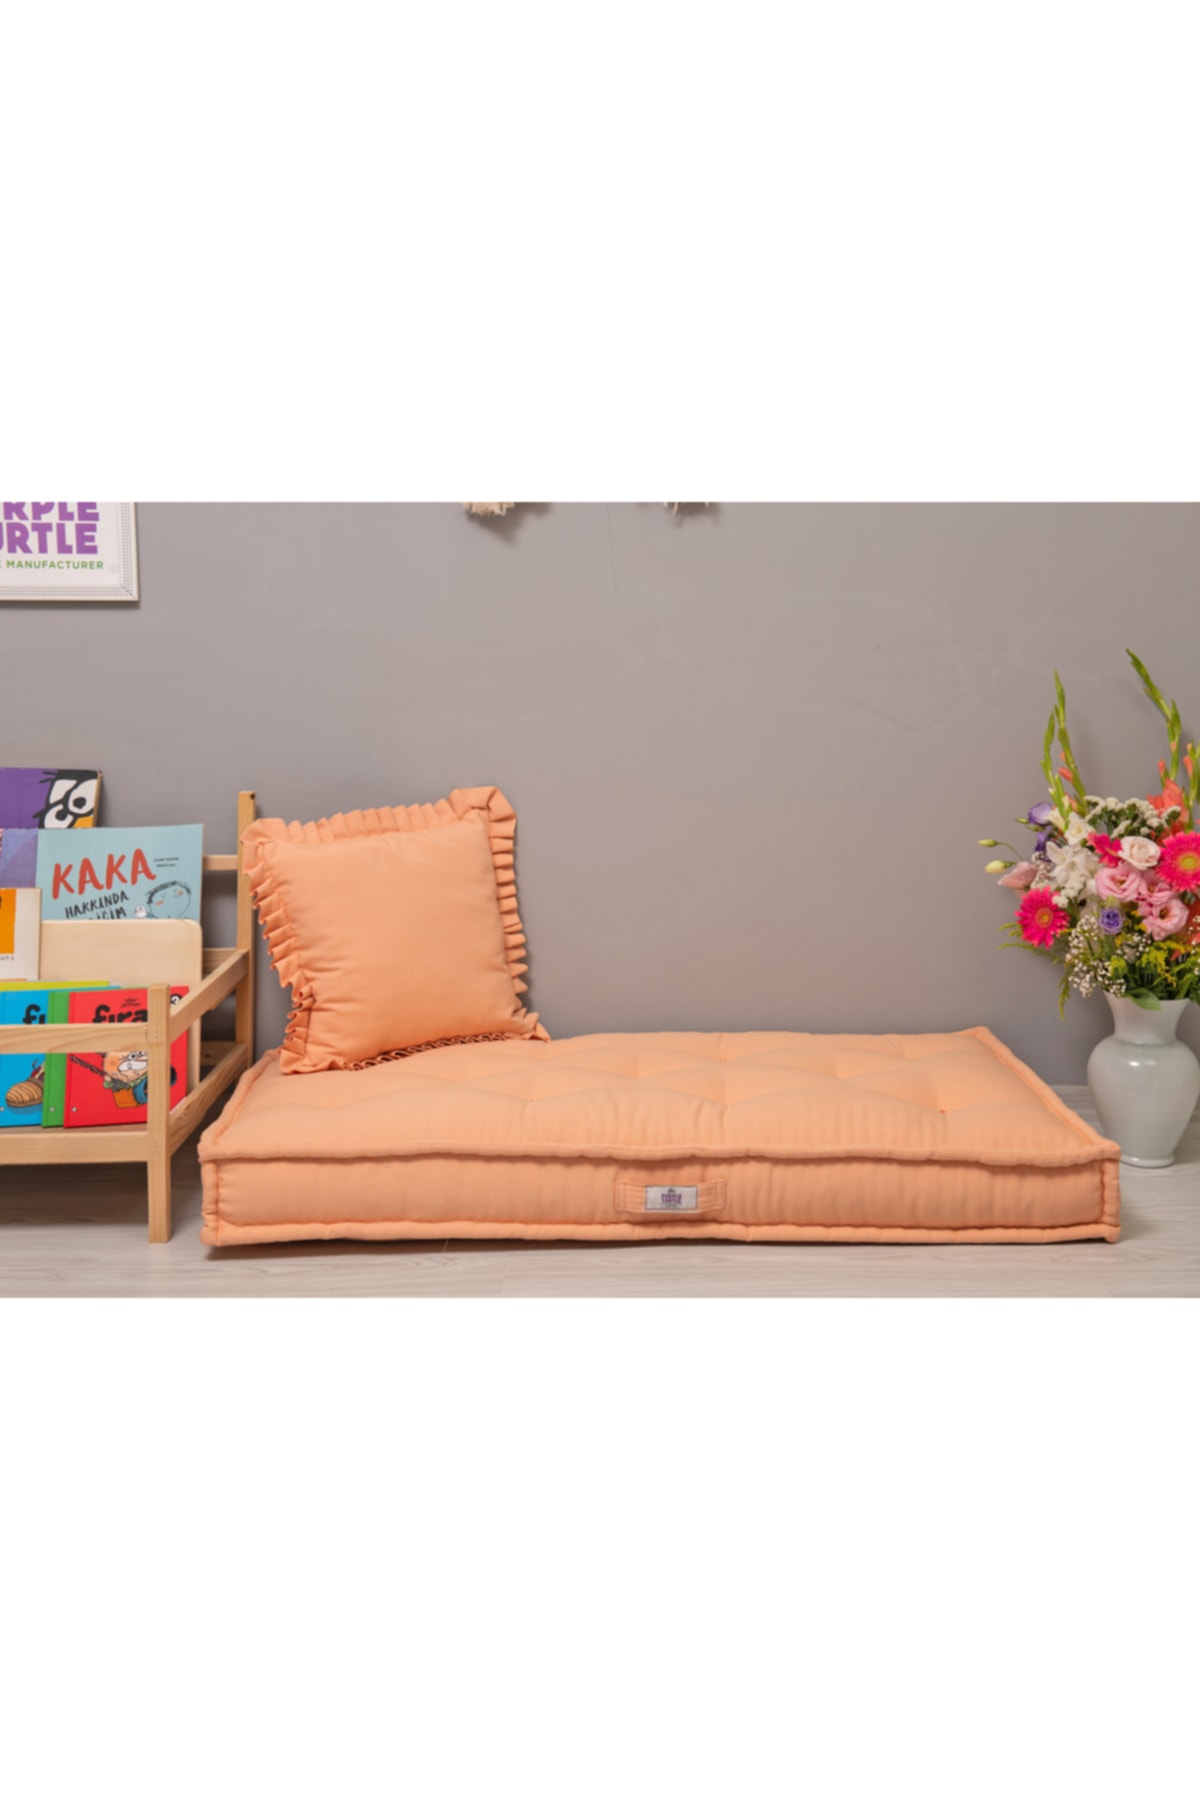 Purple Turtle Textile %100 Organik Yatak, Fransız Tarzı El Yapımı Bebek Ve Çocuk Yatağı, Dekoratif Minder / Pudra